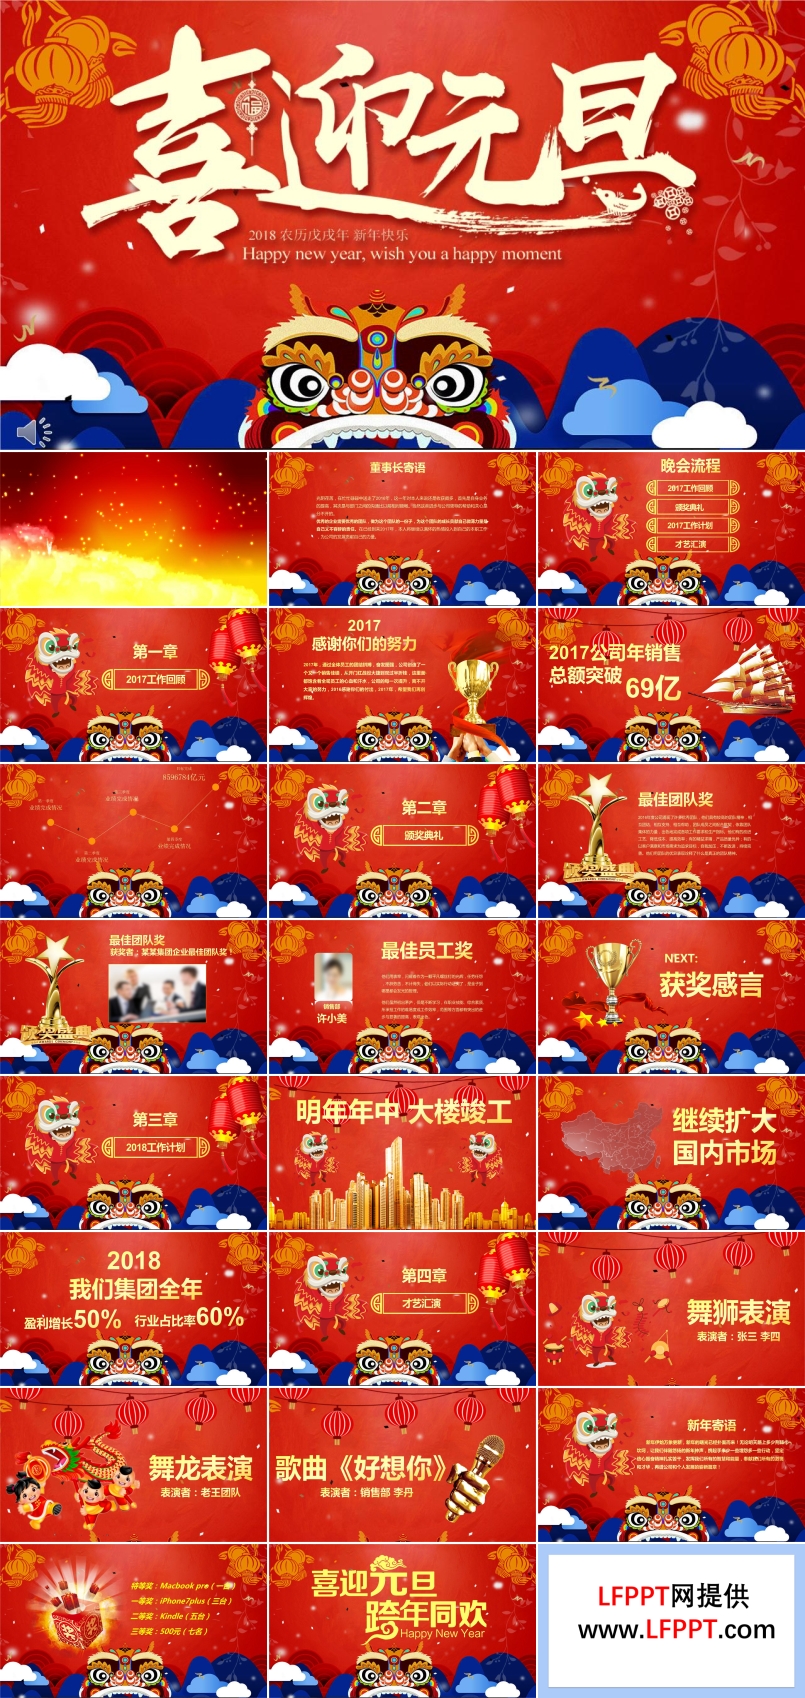 中国风特效动画喜迎元旦贺新年PPT模板